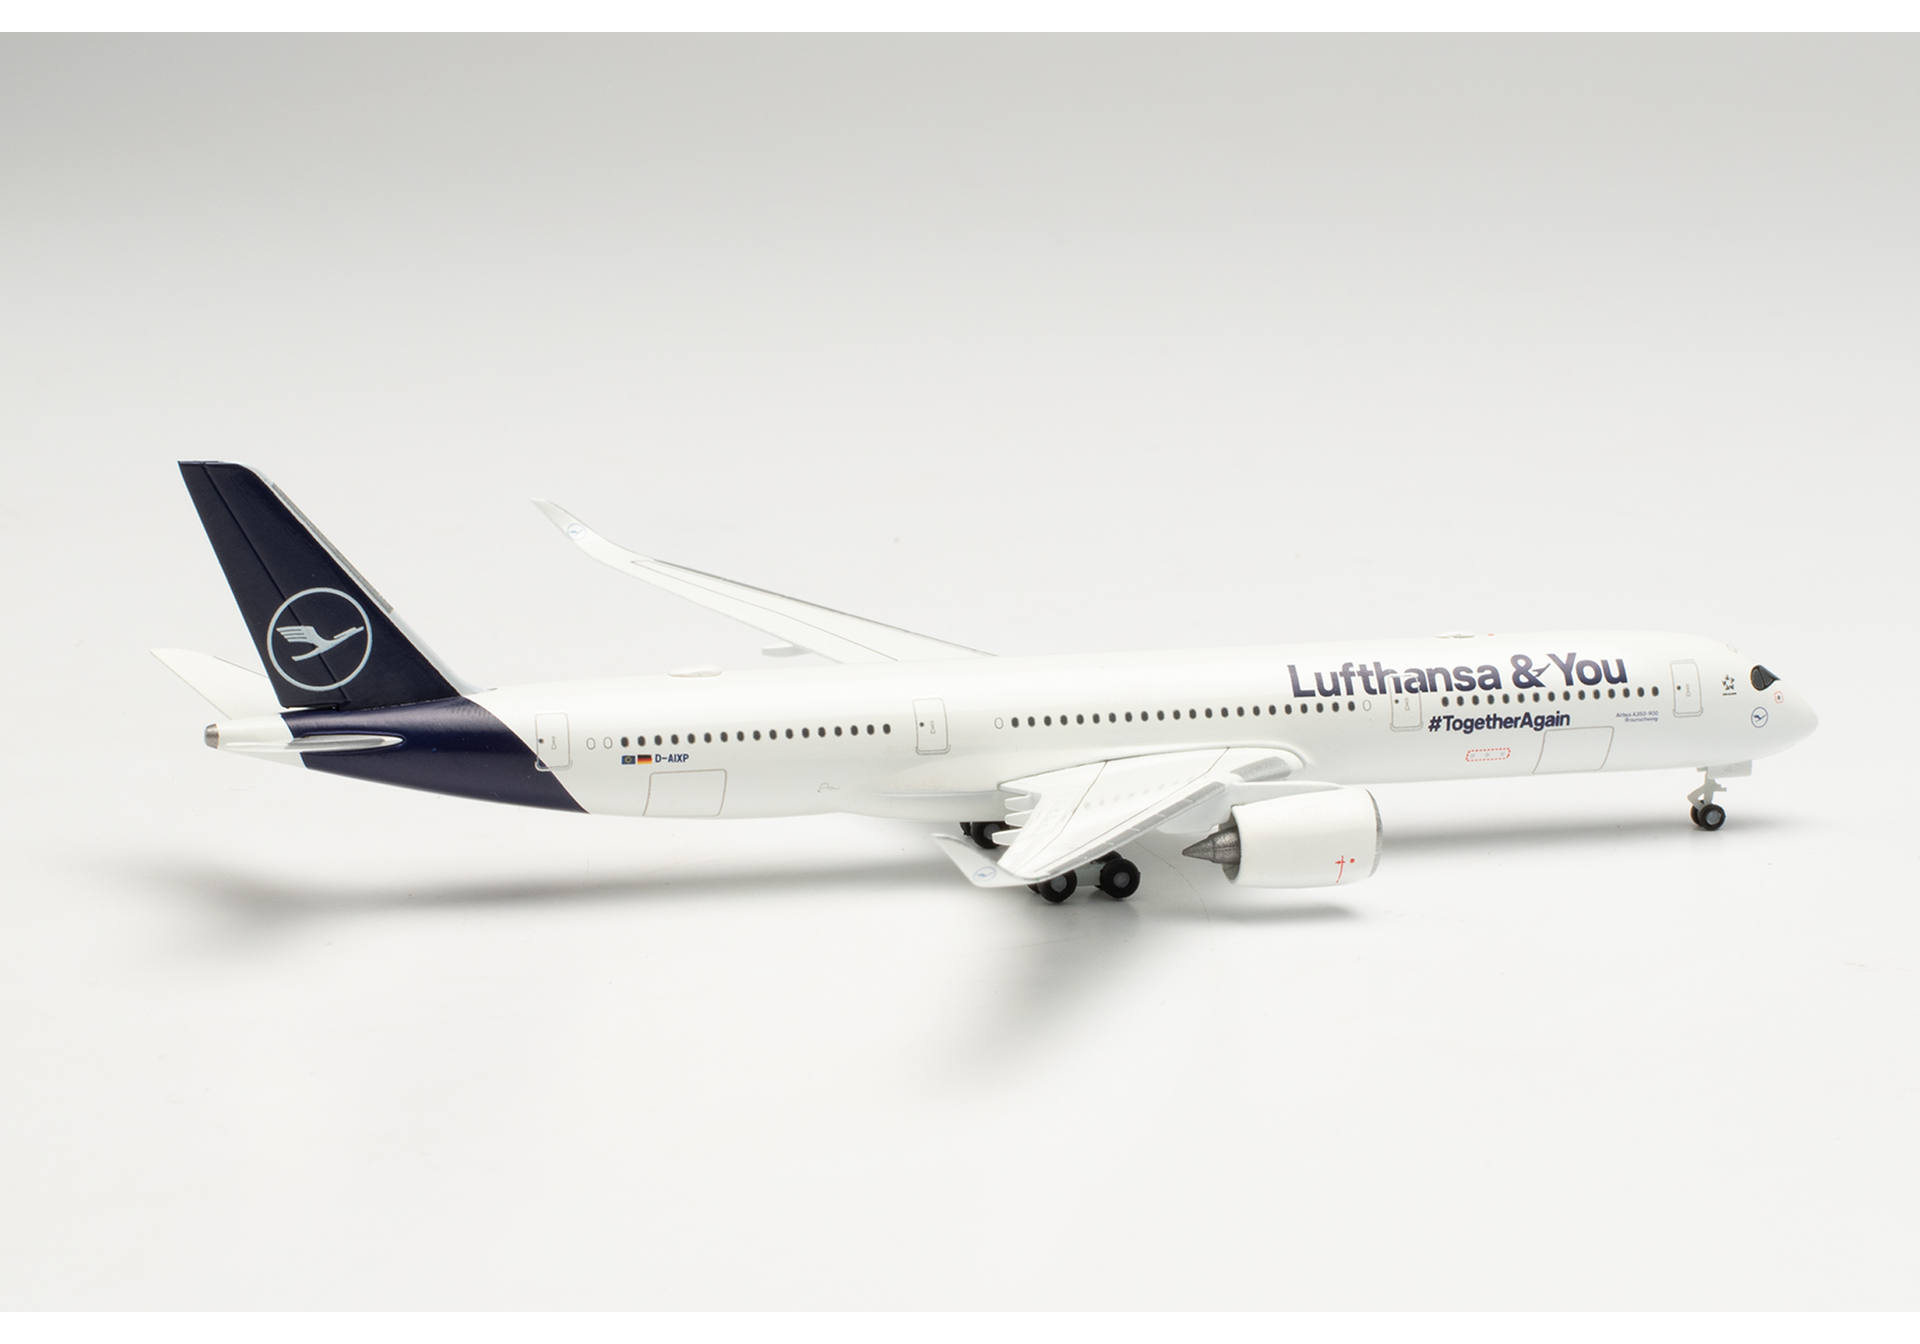   Lufthansa Airbus A350-900 Lufthansa & You  D-AIXP, 1:500 herpa 536066. # 2 hobbyplus.ru